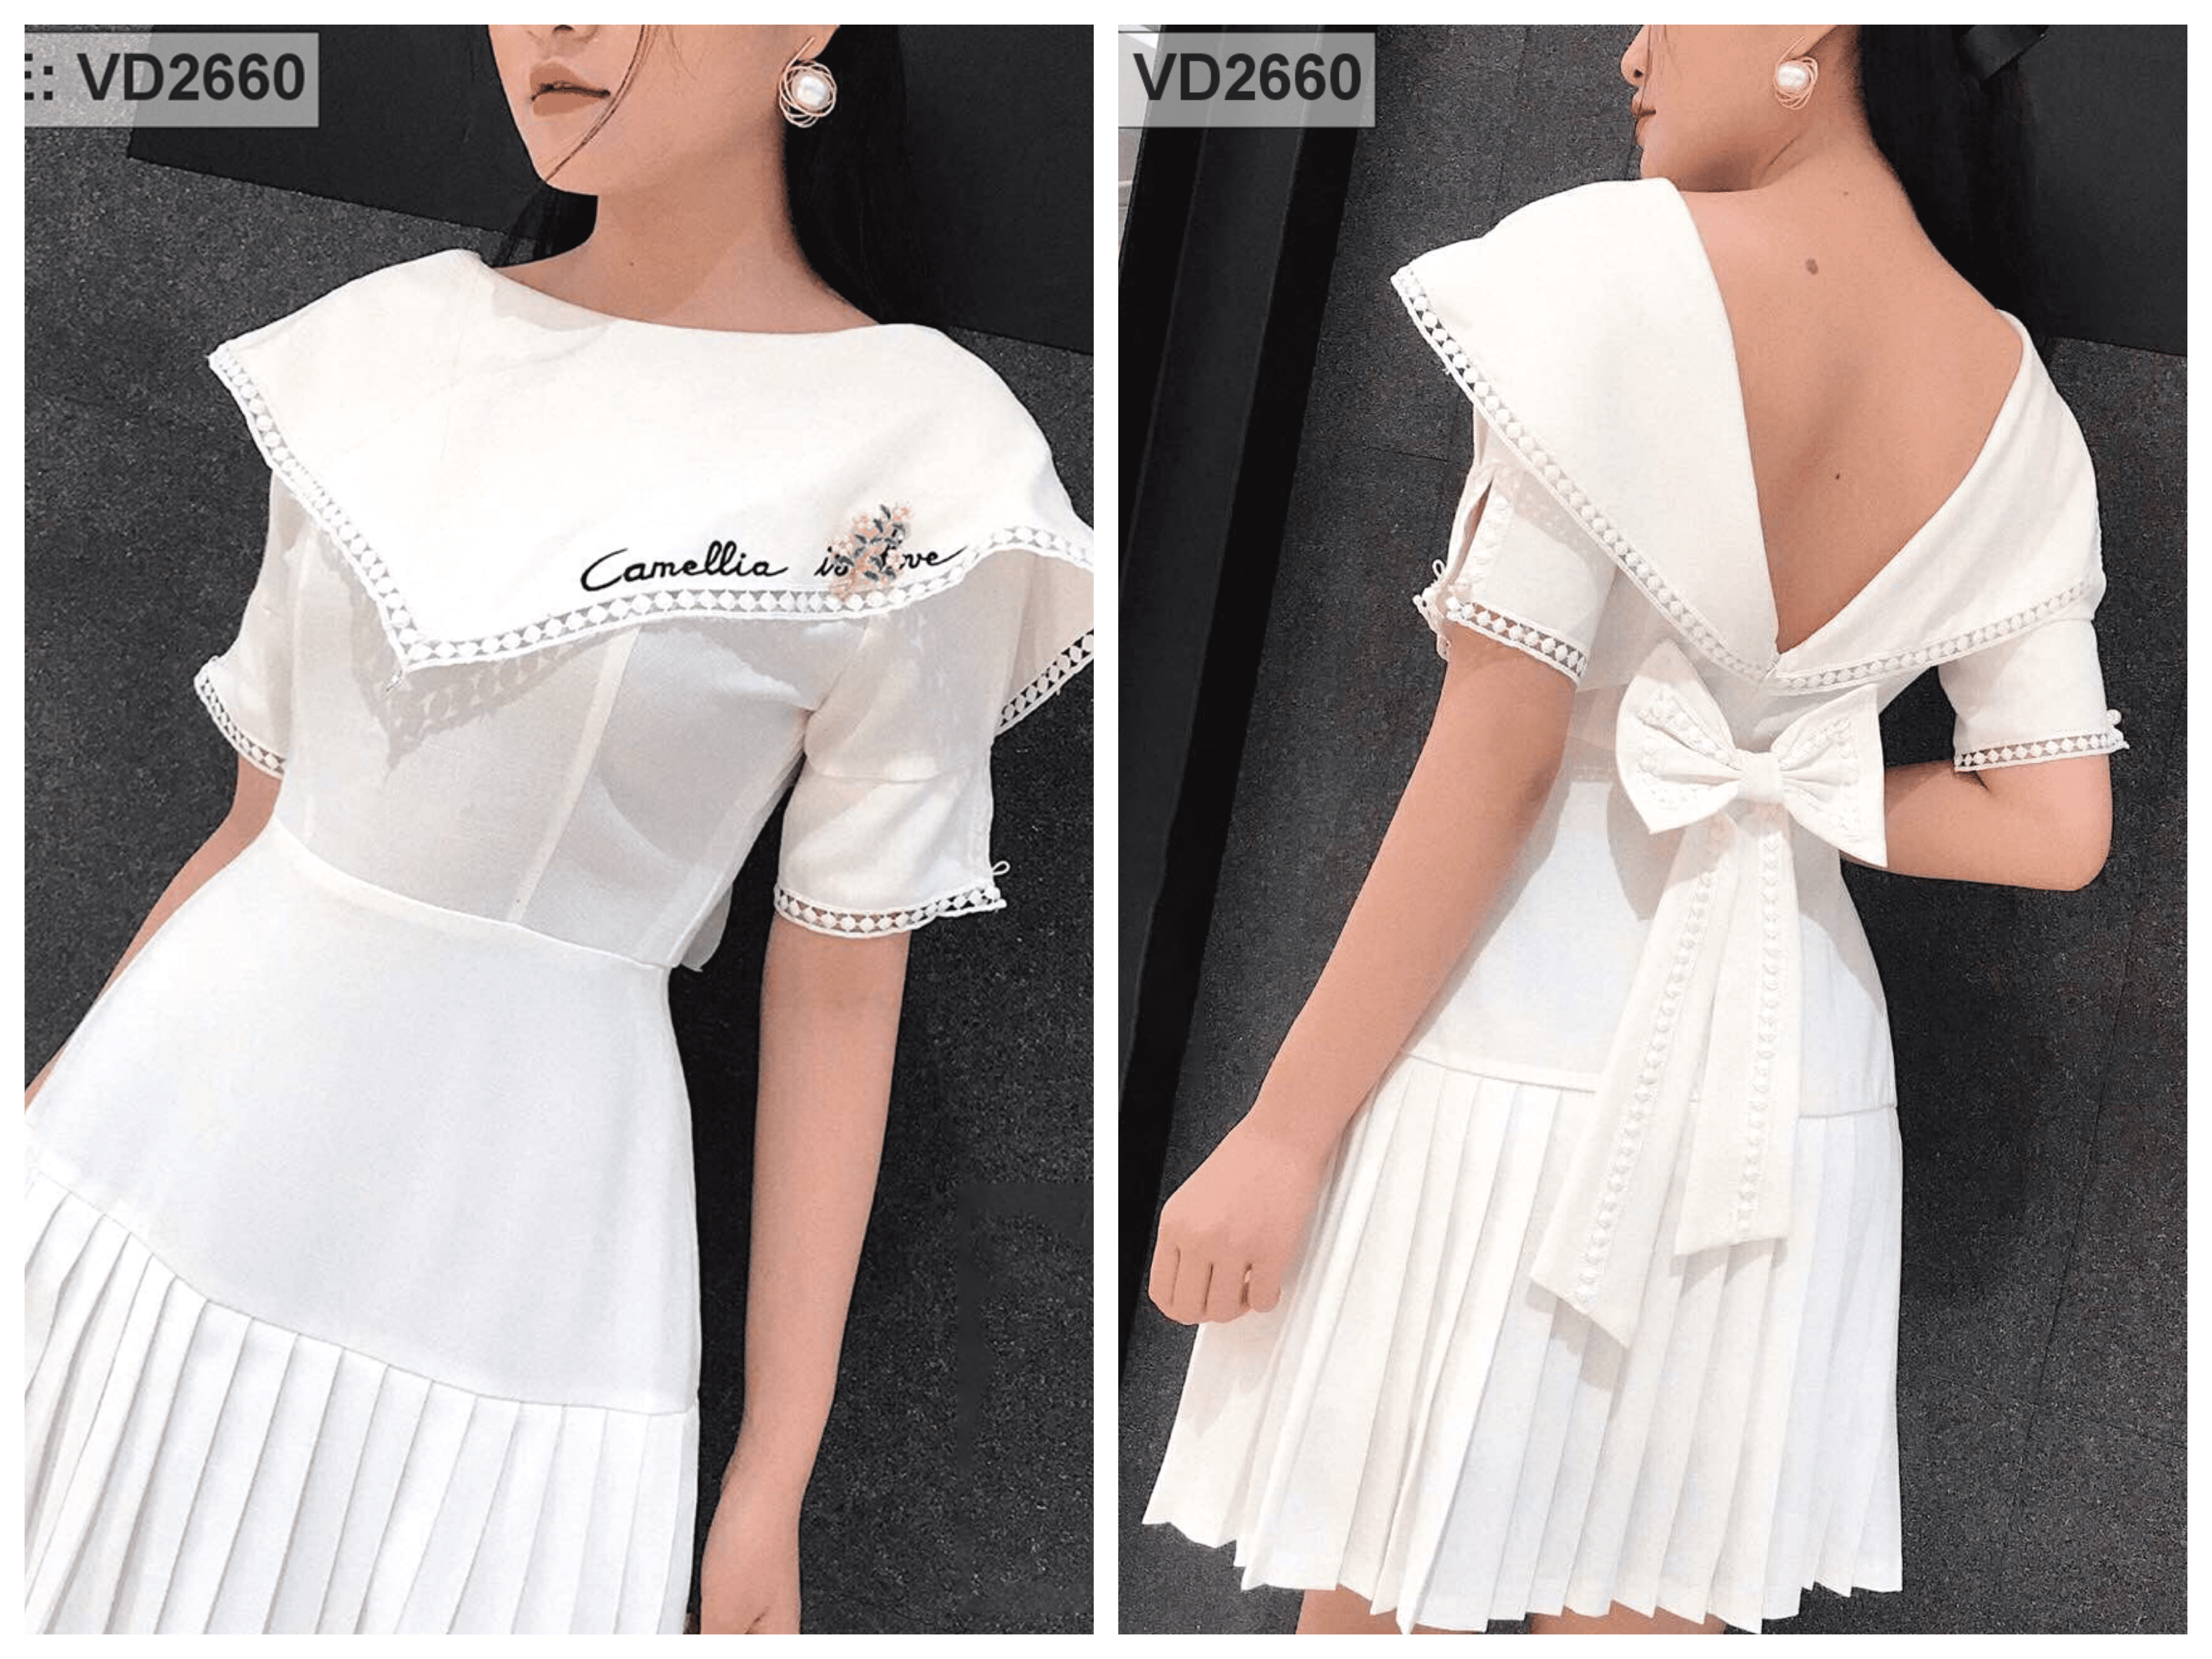 Váy ren trắng cao cấp Palvin H0621 (váy dáng xòe, tay ngắn) - Palvin